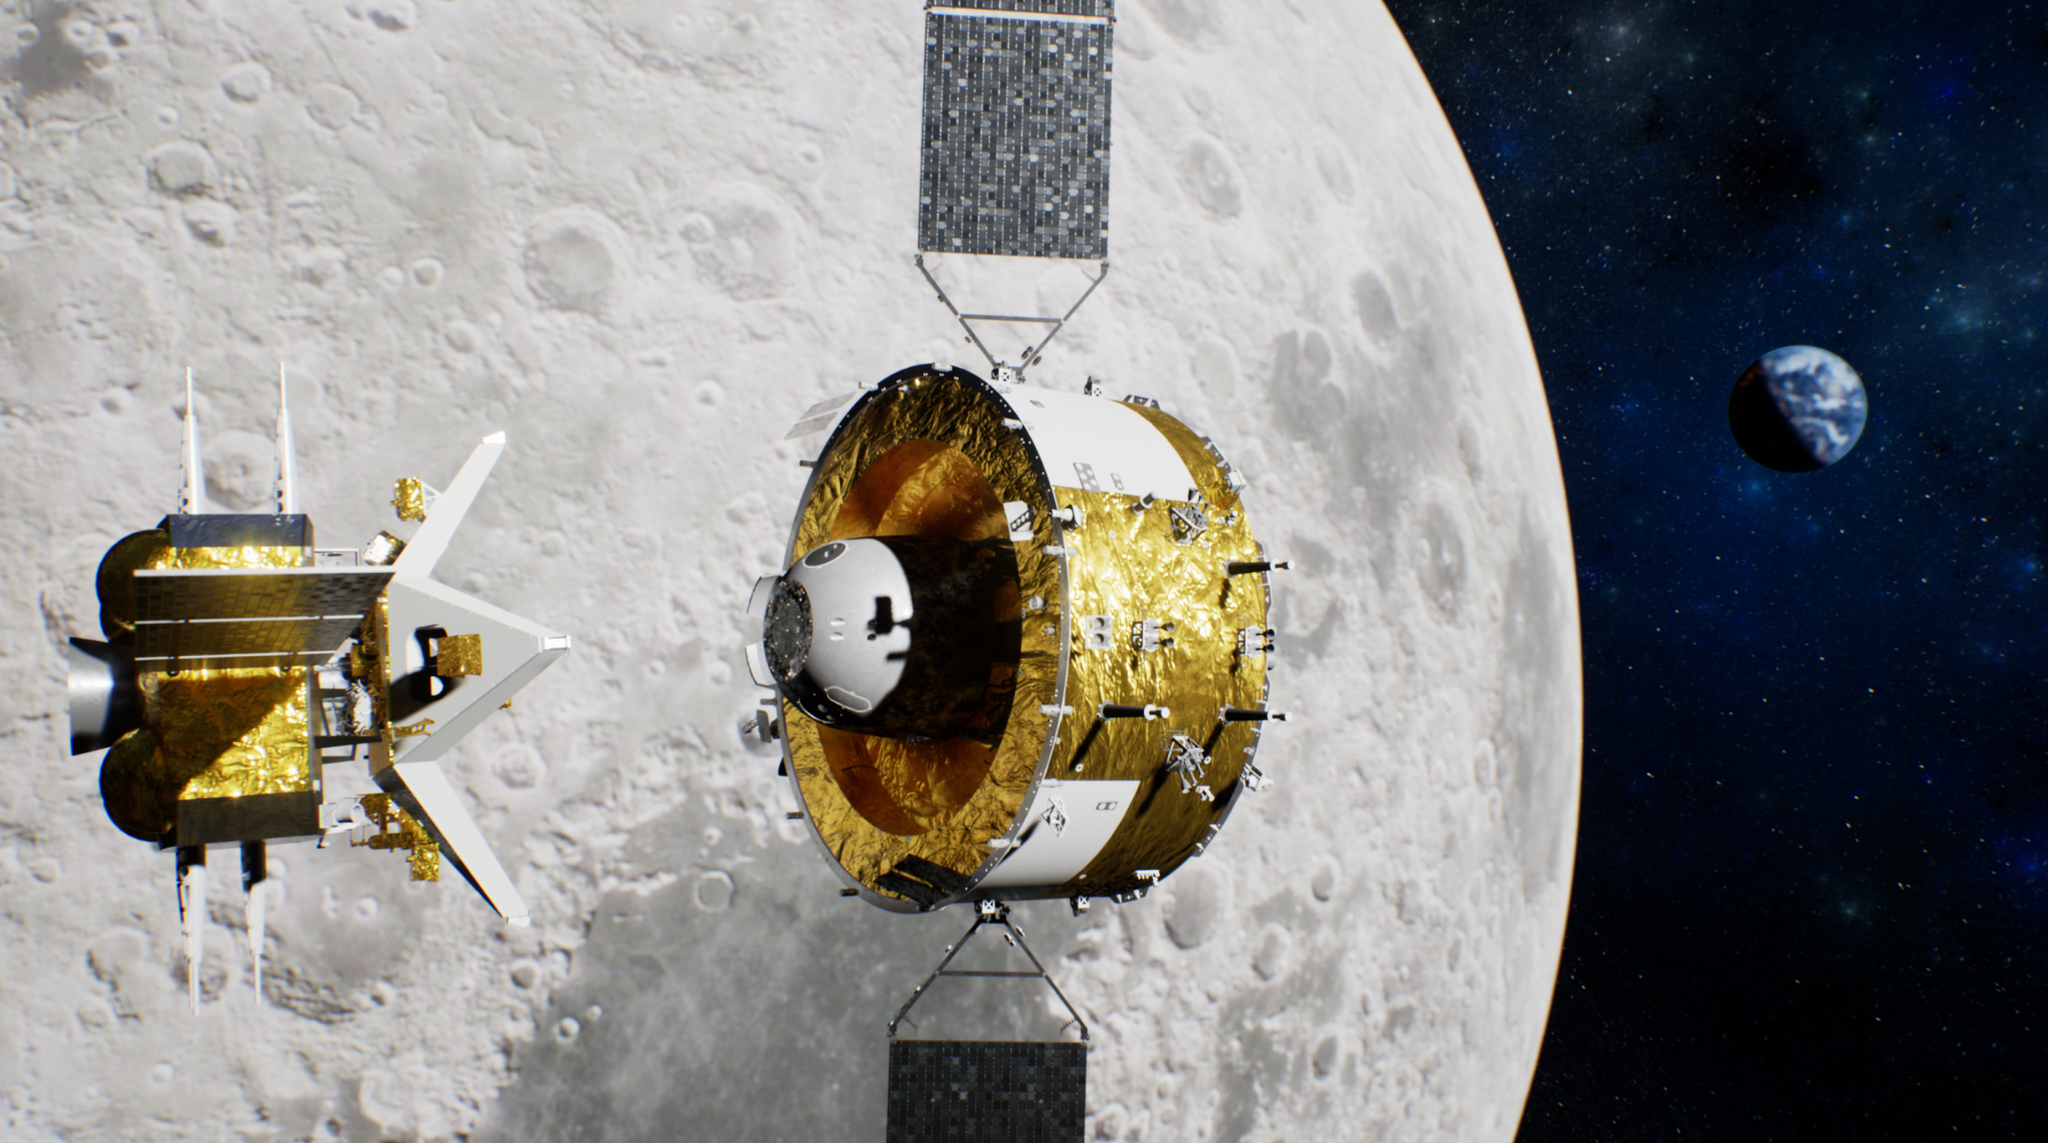 嫦娥五号上升器与轨道器返回器组合体交会对接效果图，将把月球样品转移到返回器内。图/中国航天科技集团八院